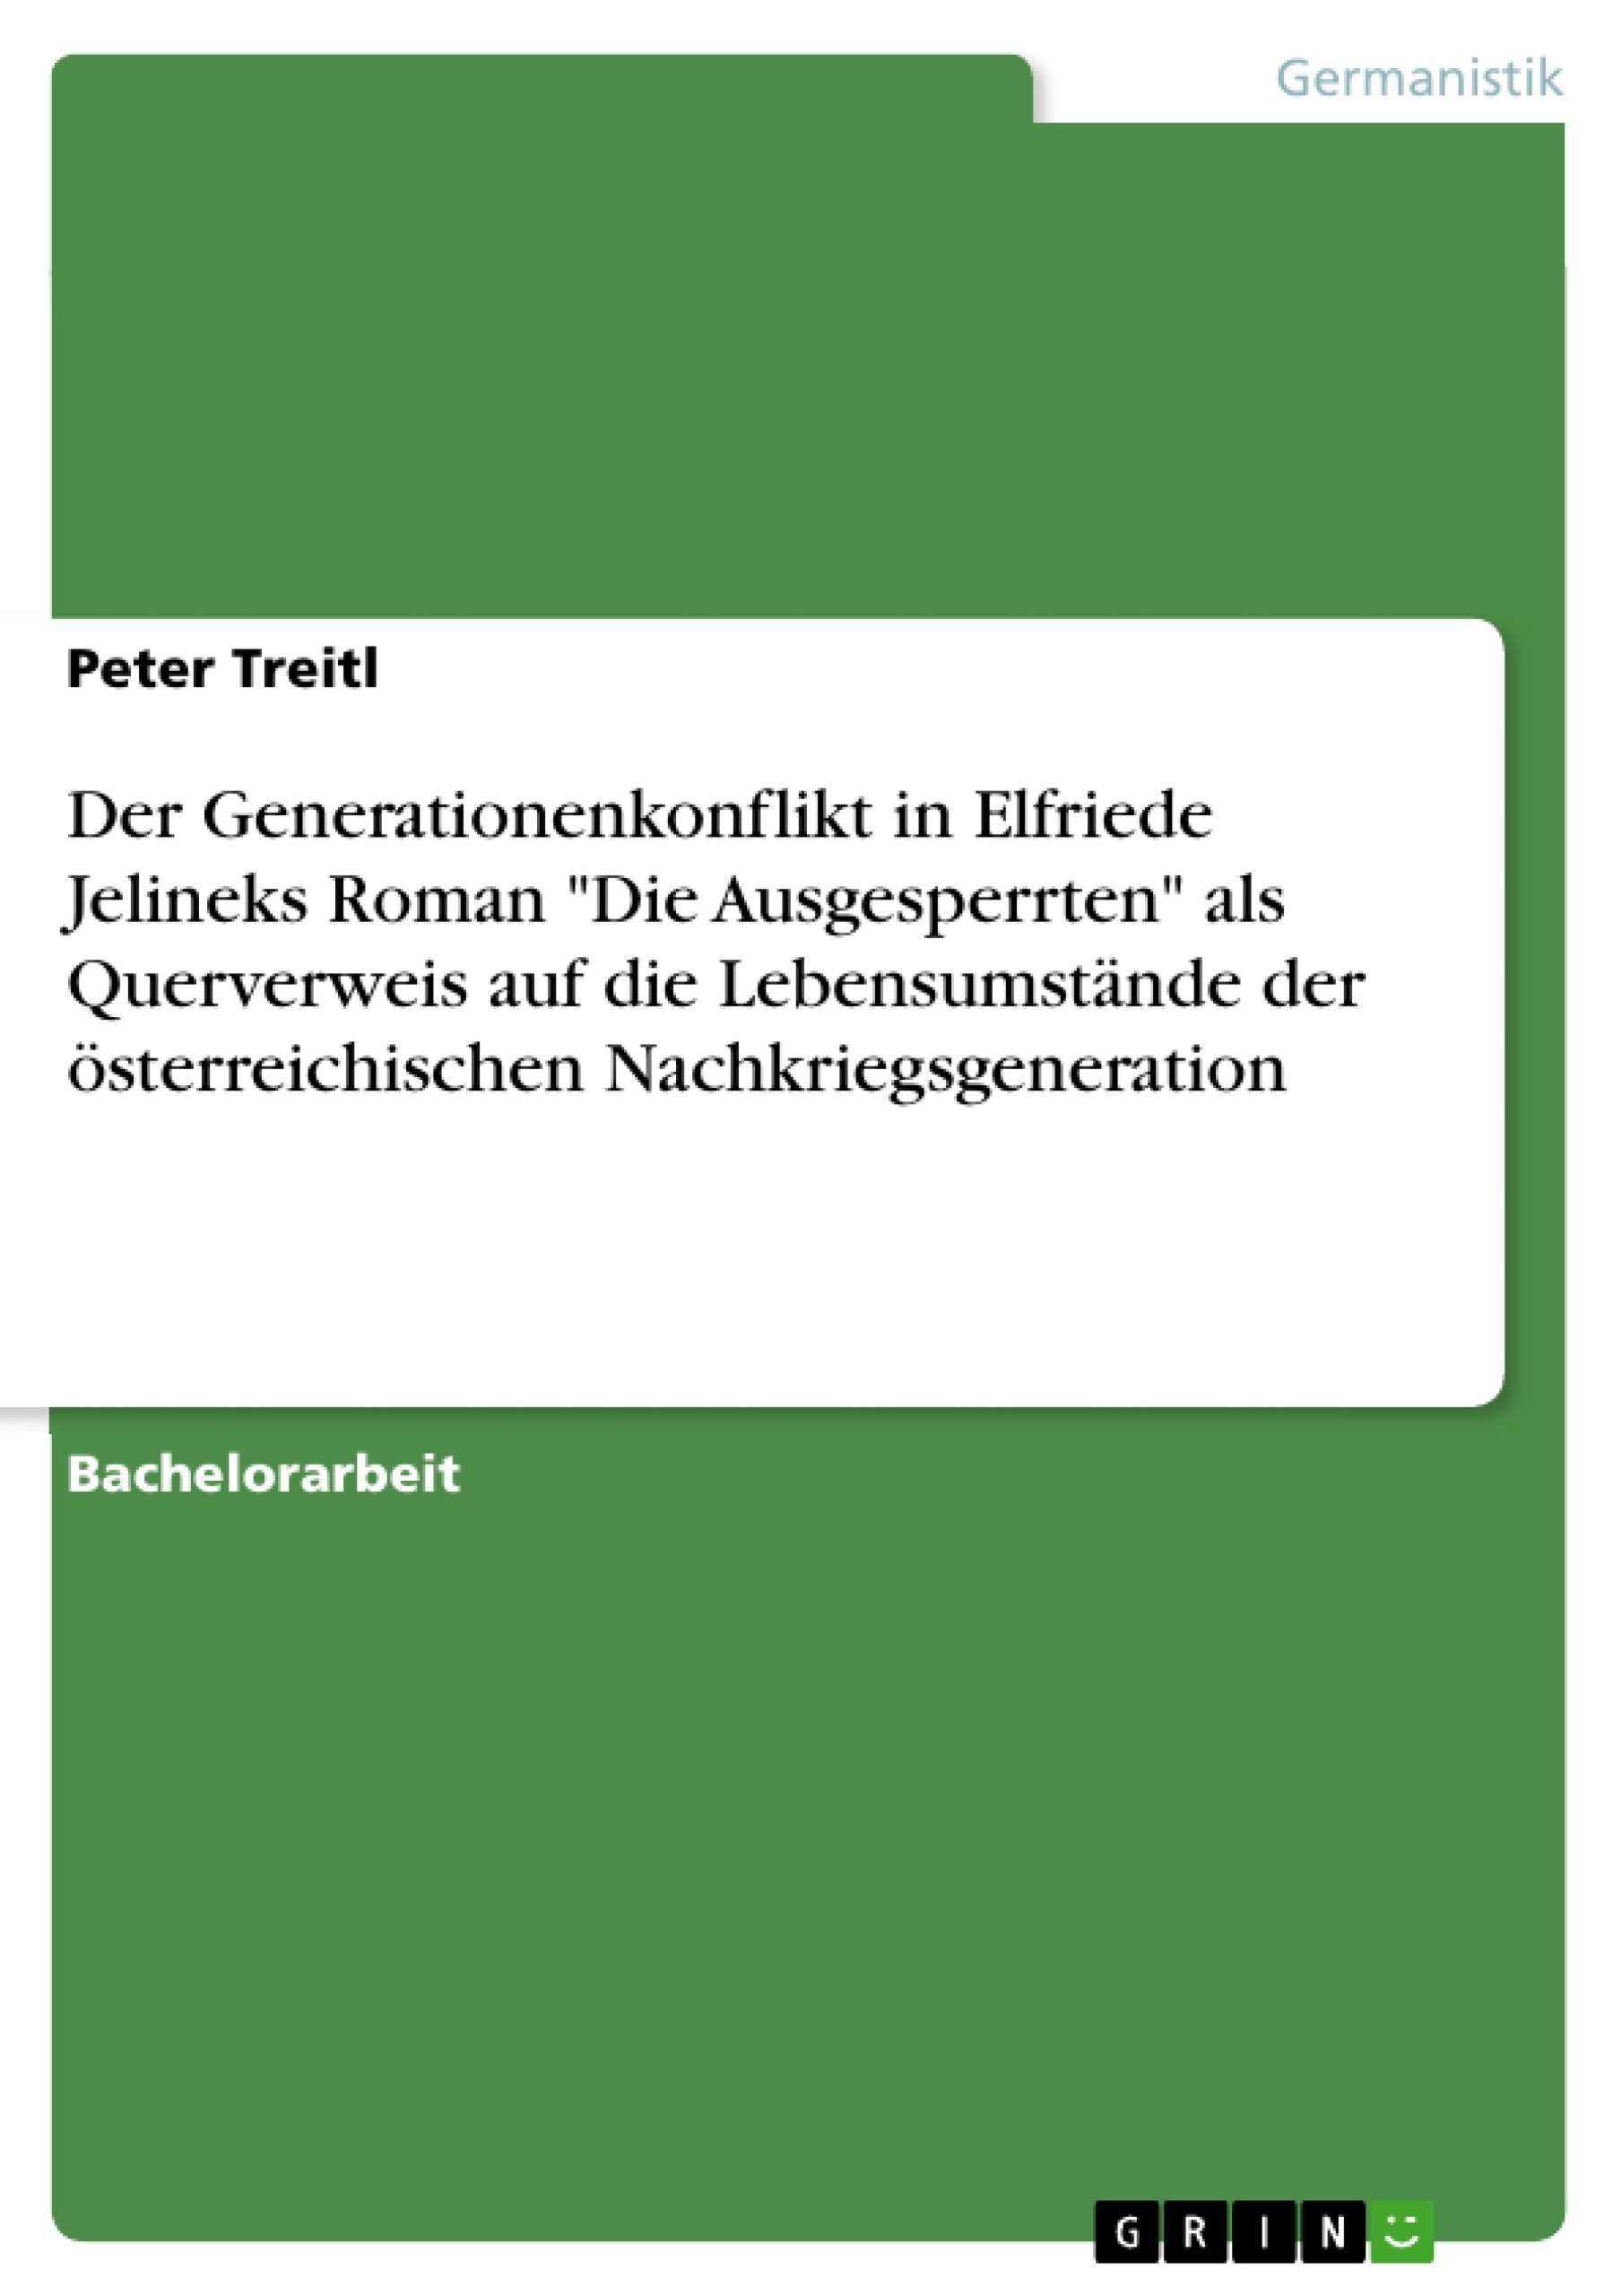 Title: Der Generationenkonflikt in Elfriede Jelineks Roman "Die Ausgesperrten" als Querverweis auf die Lebensumstände der österreichischen Nachkriegsgeneration